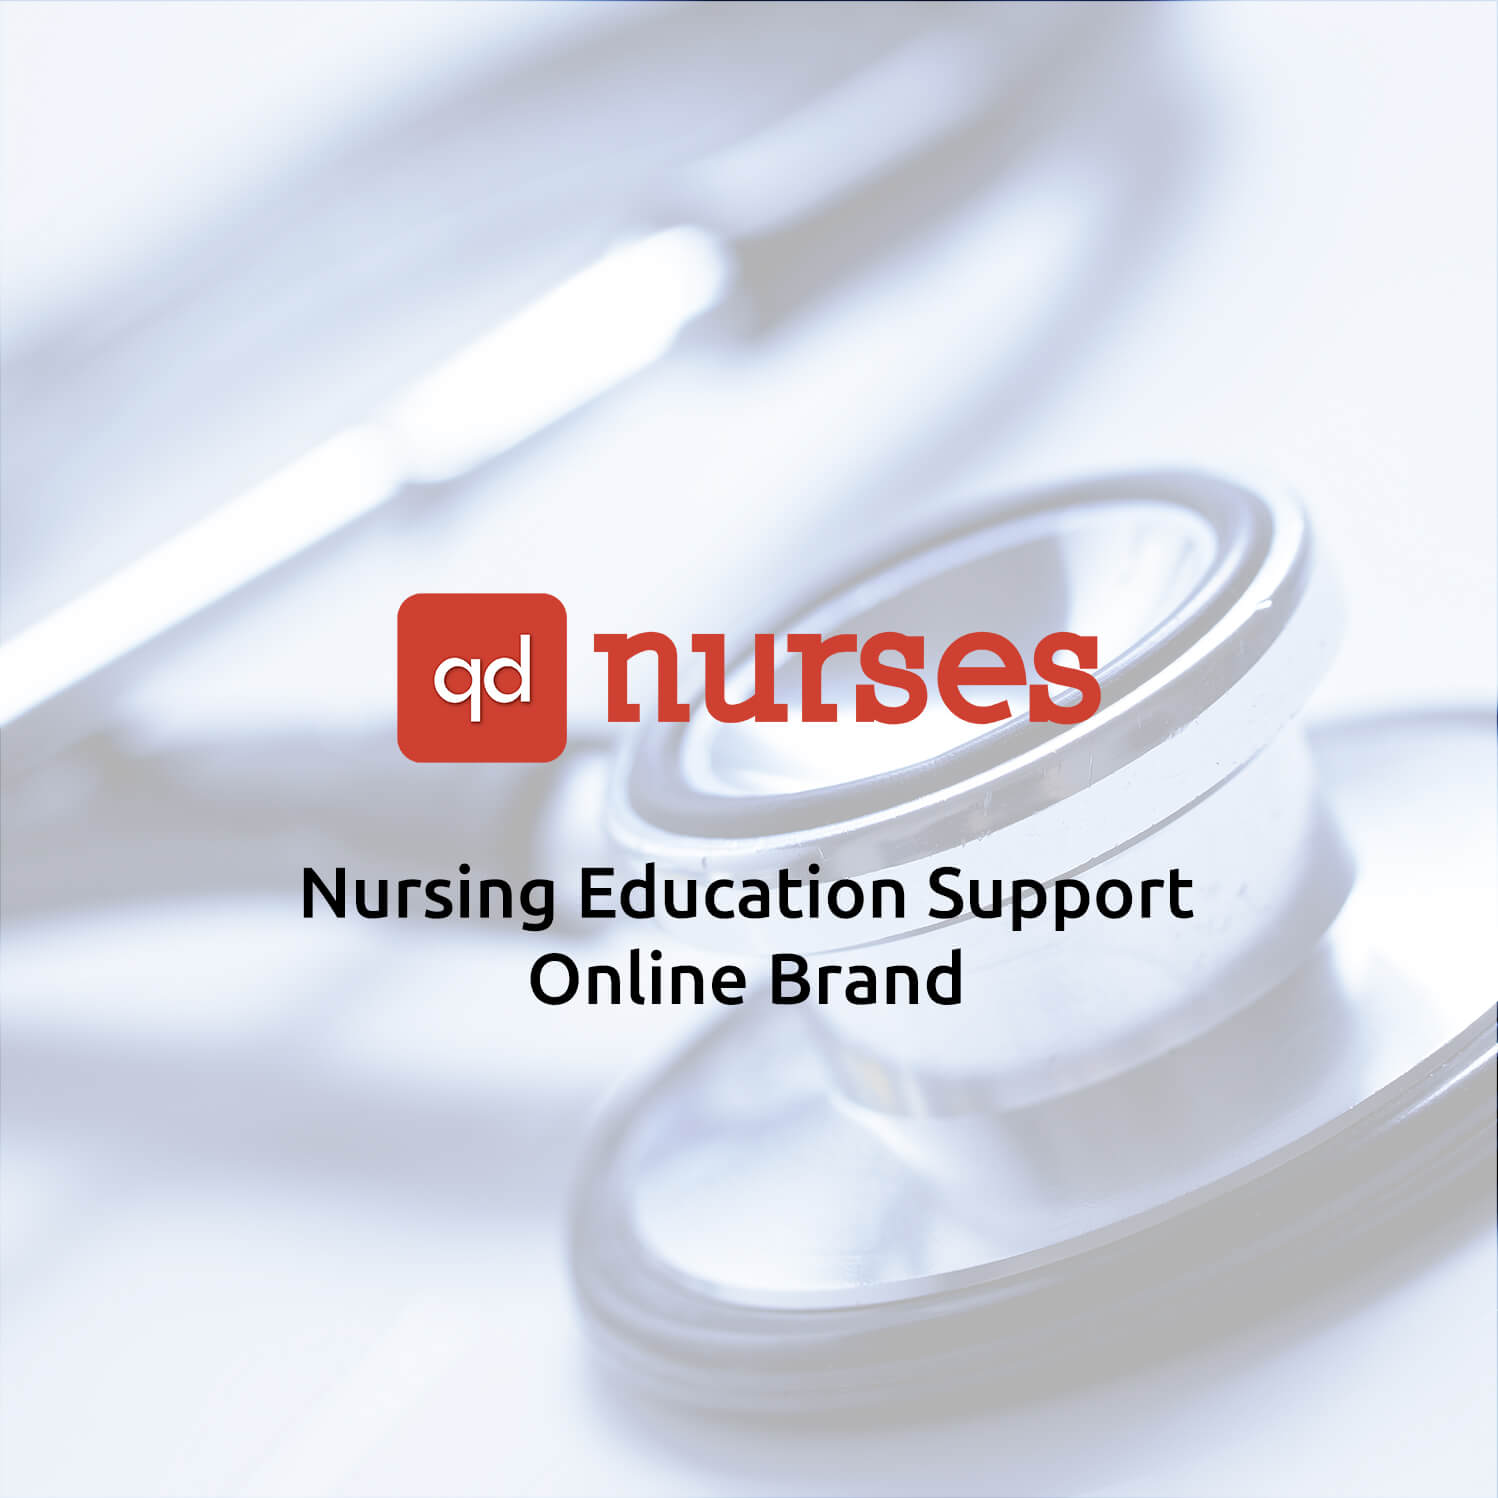 QD Nurses - Nursing Education Support & Online Brand